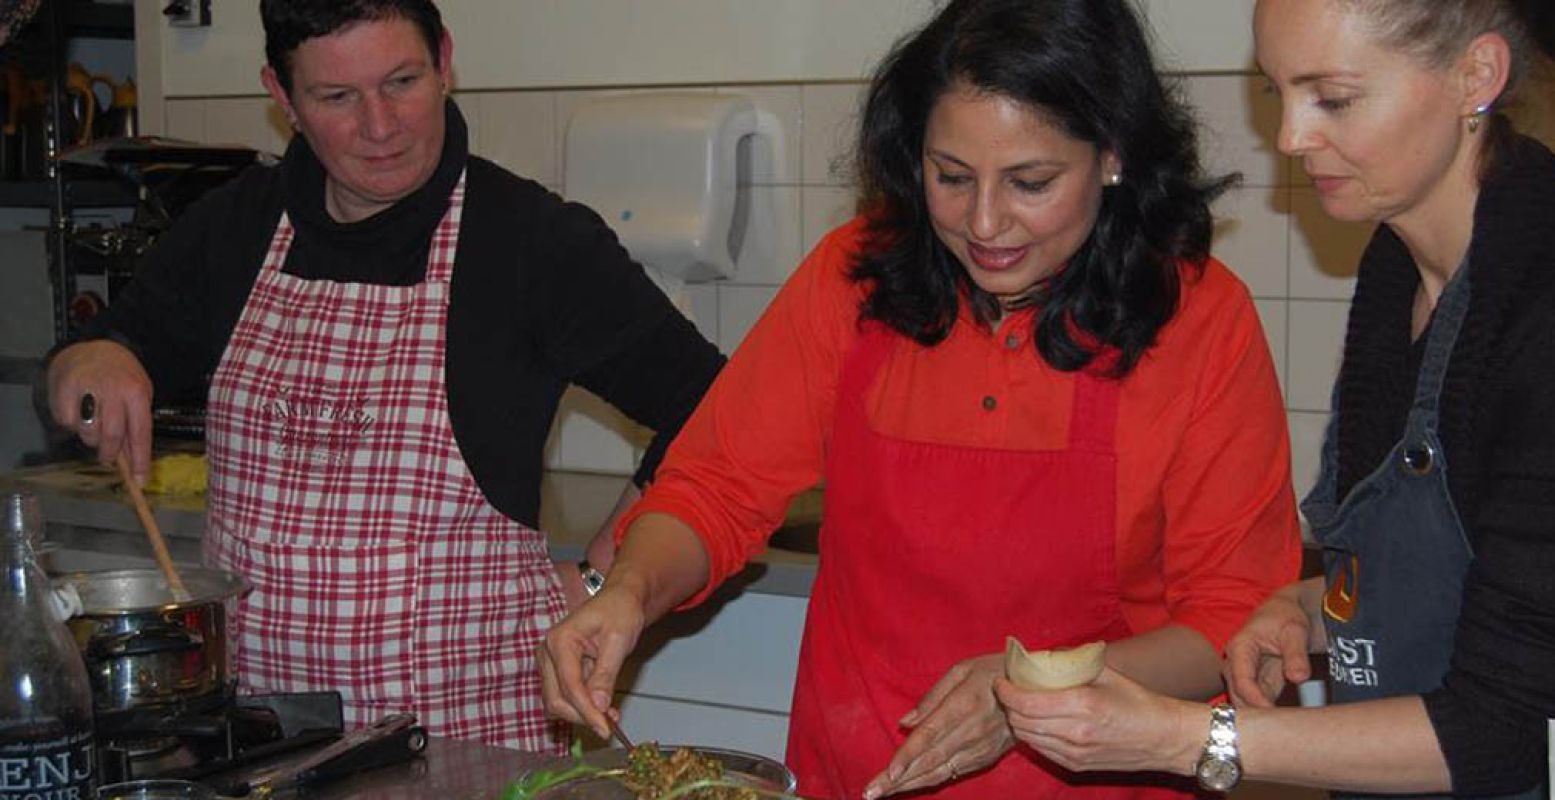 Leer de lekkerste Indische gerechten te maken tijdens een workshop. Foto: S&M Indiase Kookcursus